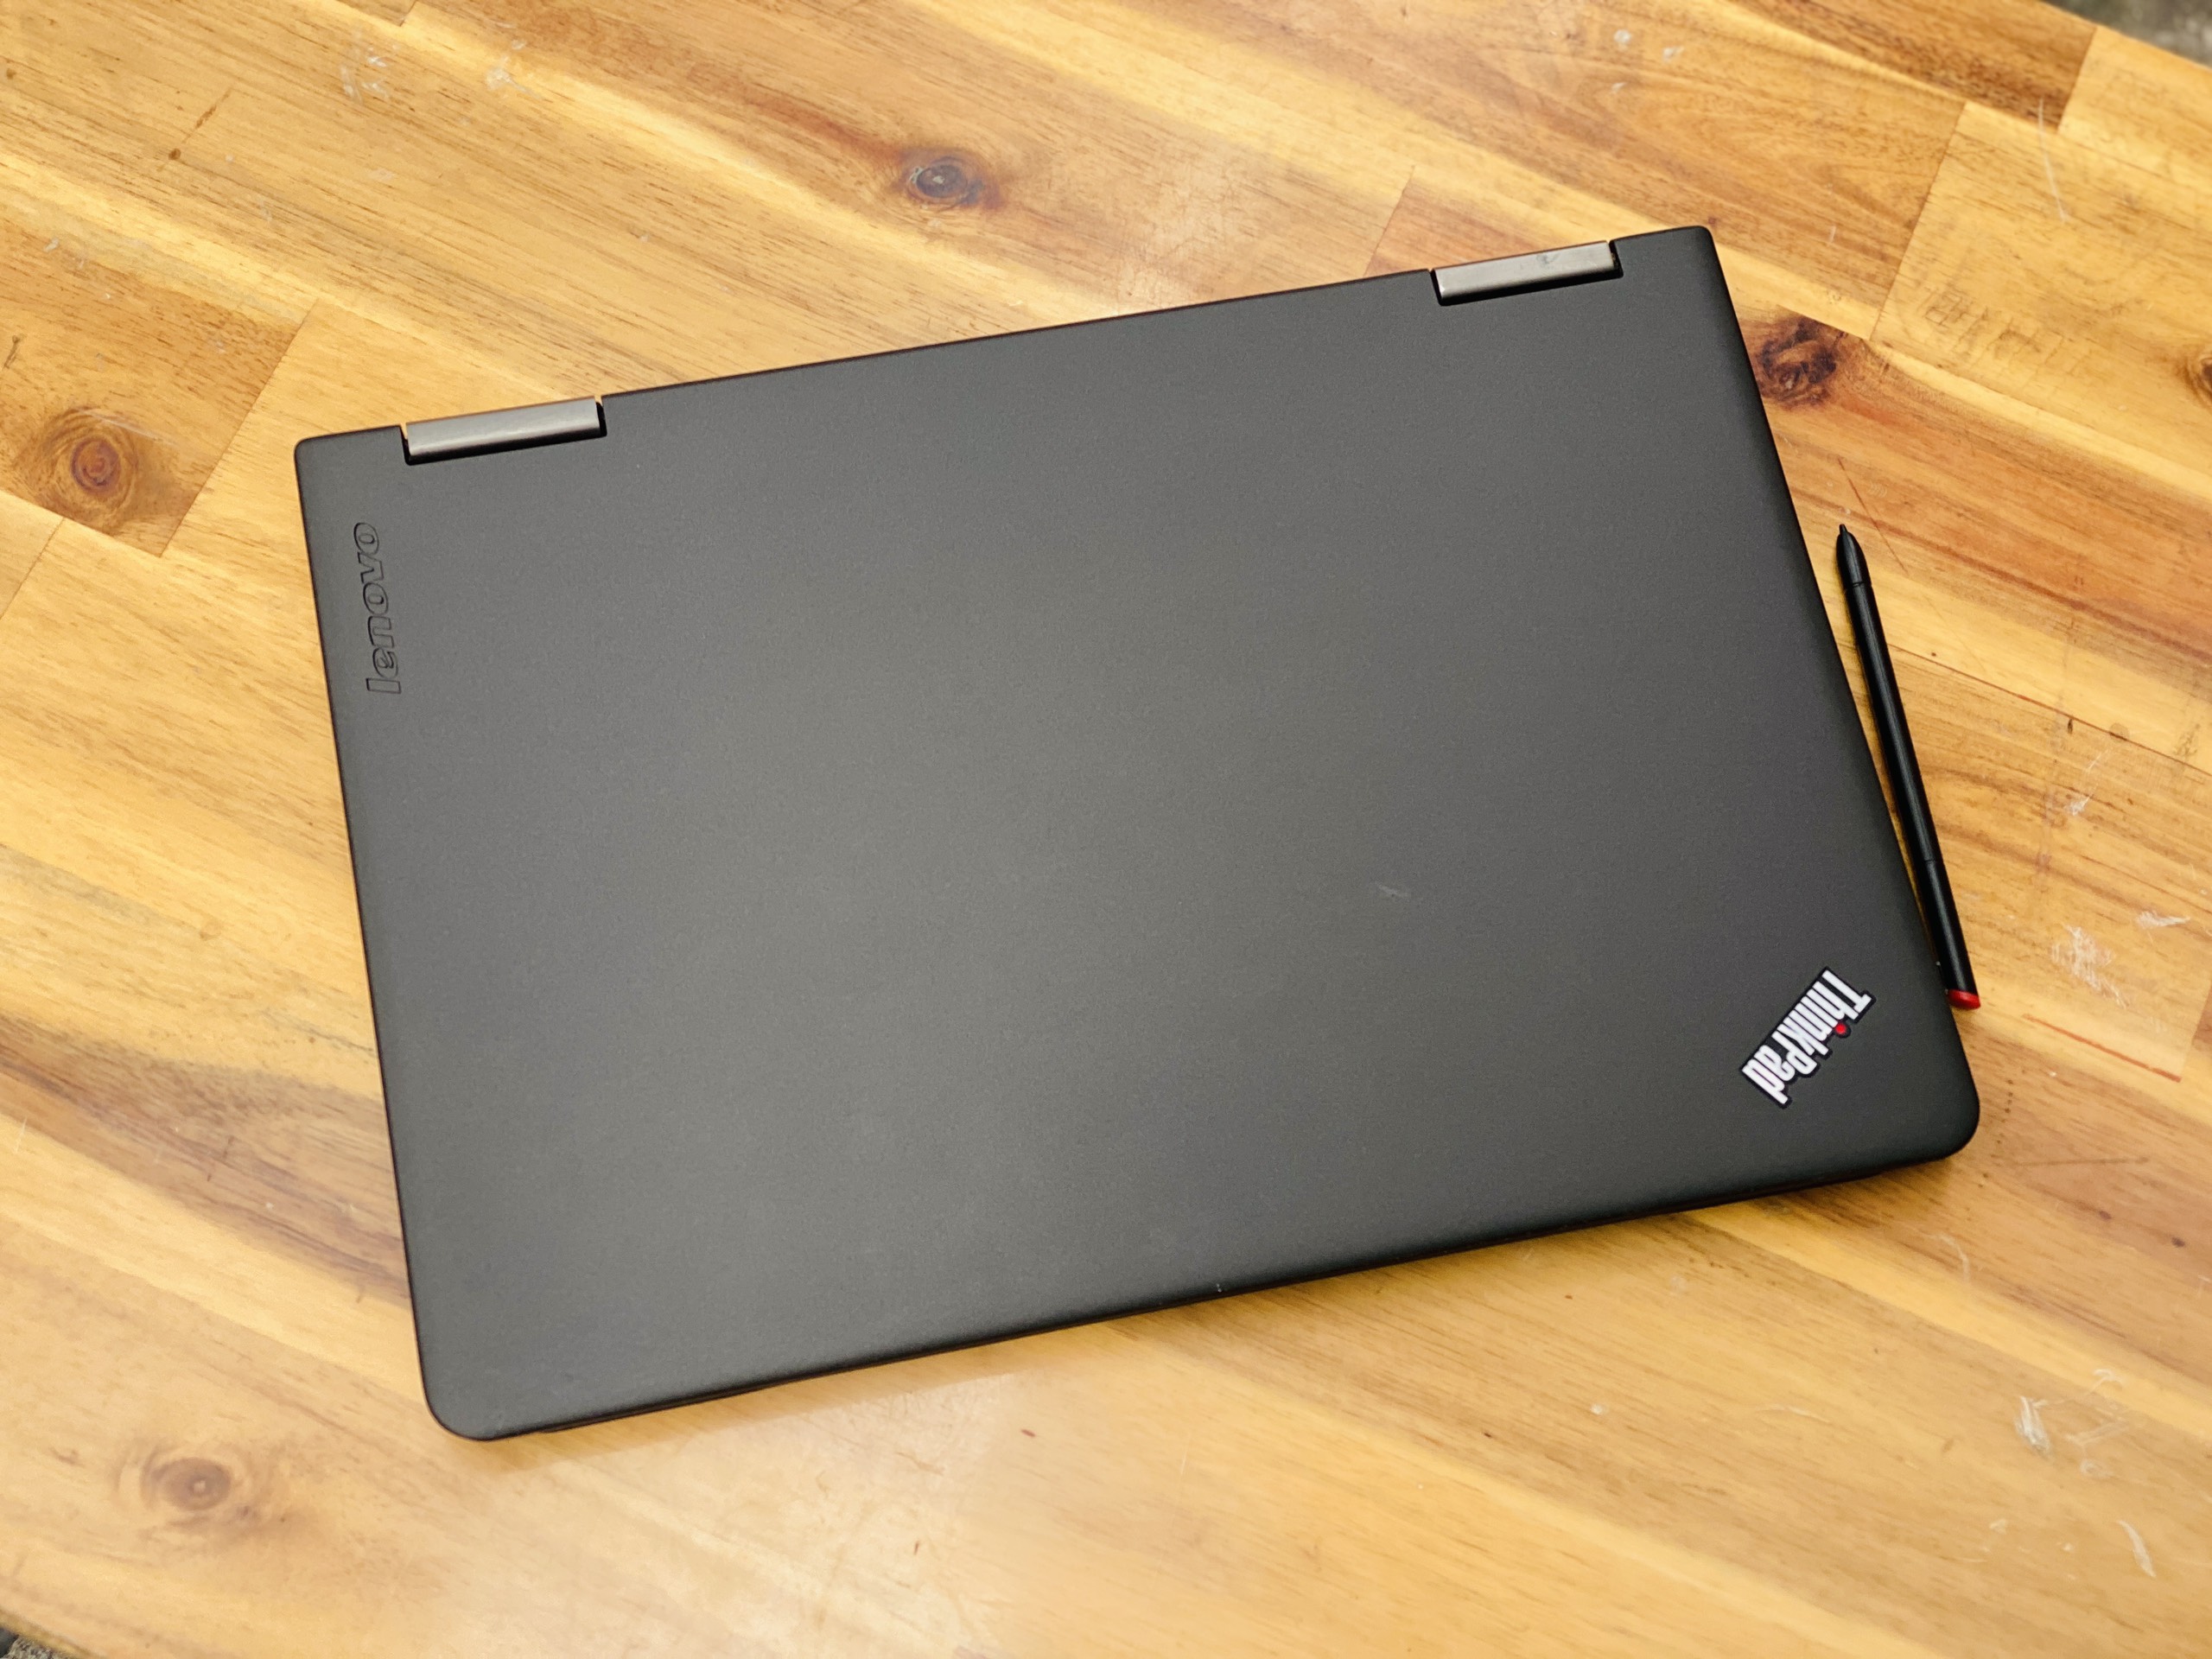 Laptop Lenovo Thinkpad Yoga 12/ i5 5200U/ 8G/ SSD256/ 12.5in/ Cảm ứng/ Xoay 360 độ 2in1/ Siêu Bền/ Giá rẻ1